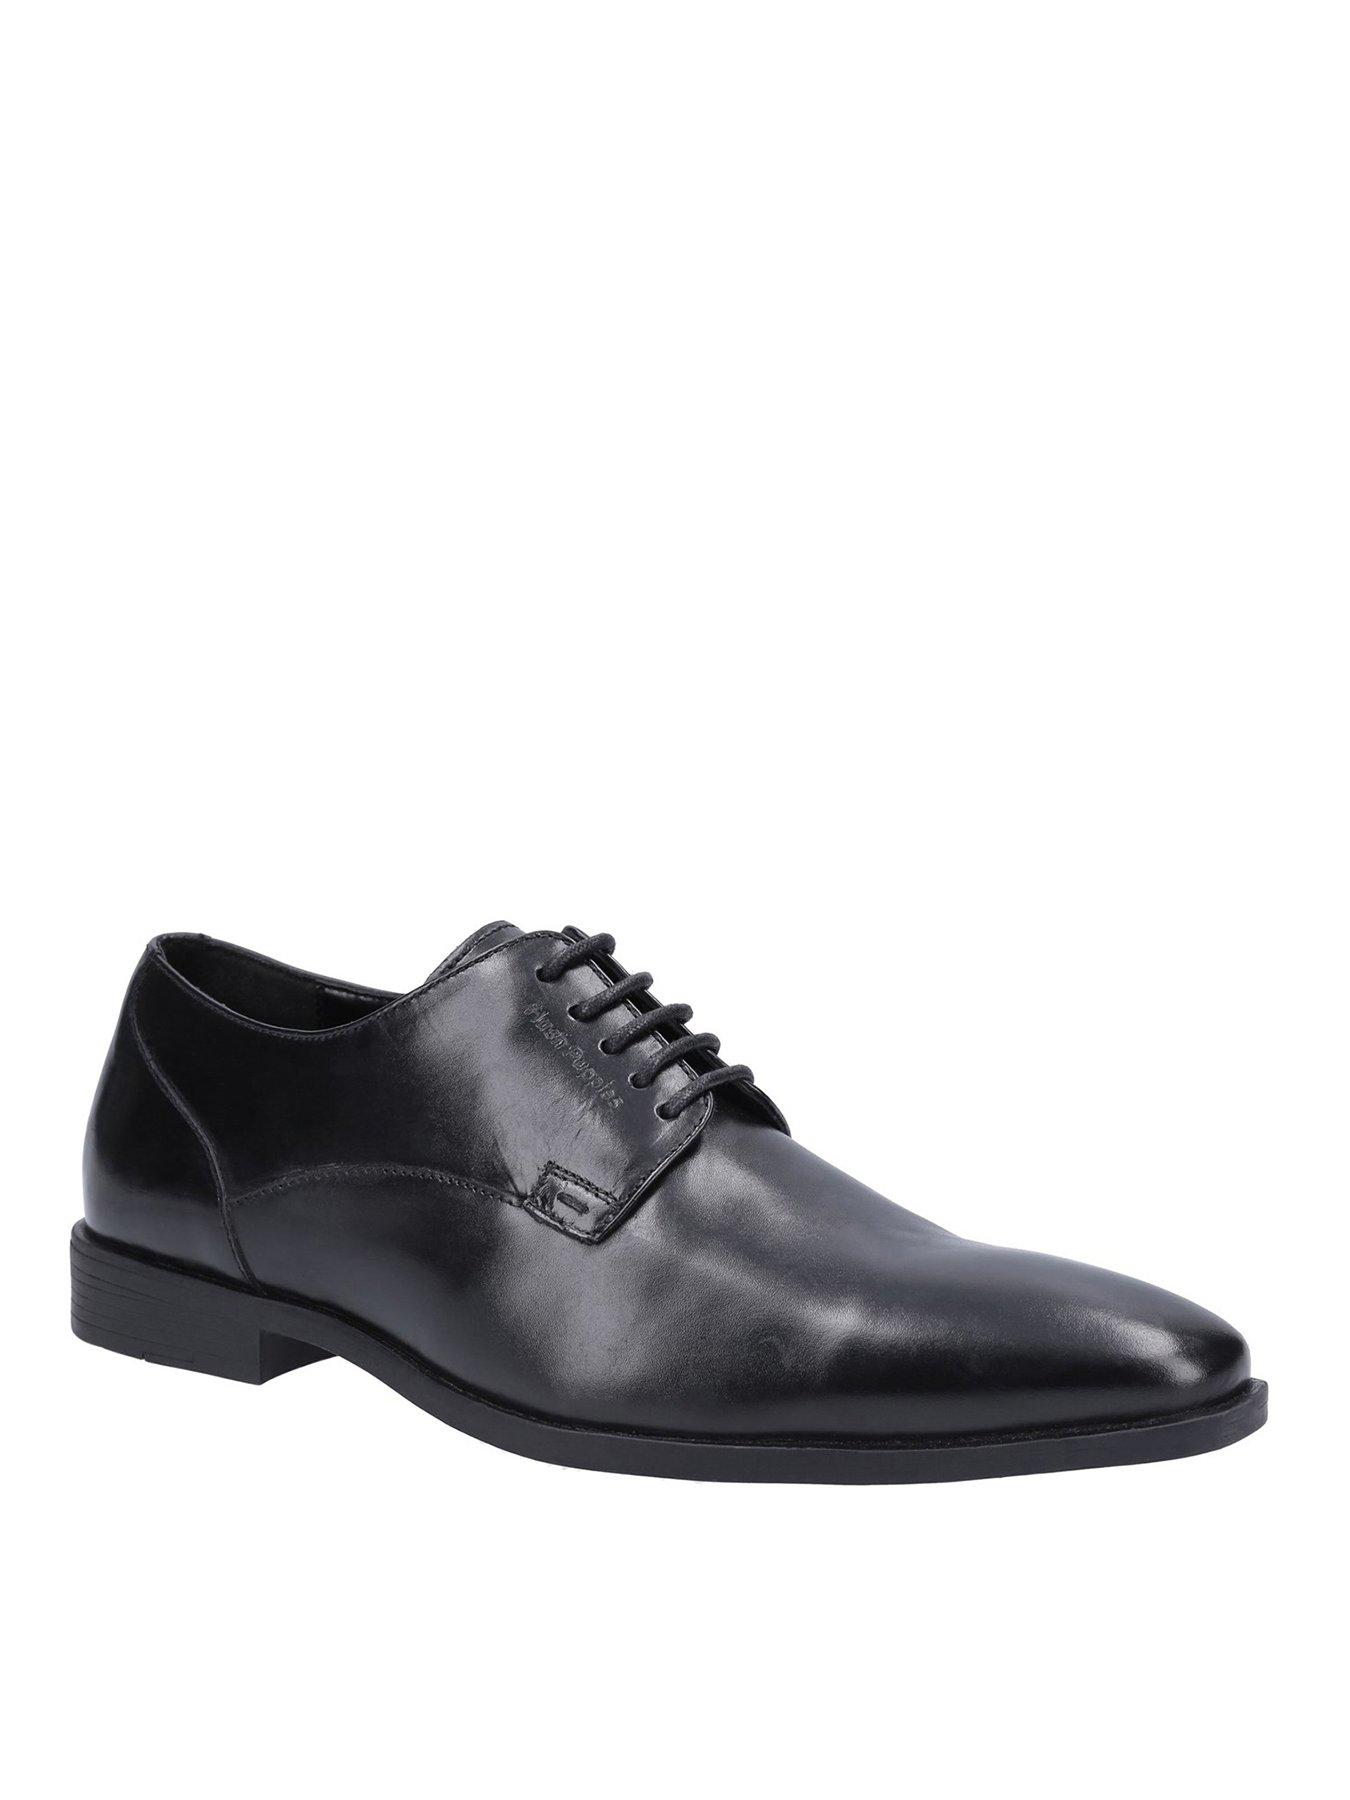 Hush Puppies Ezra Plain Toe Oxford Shoes - Black | very.co.uk